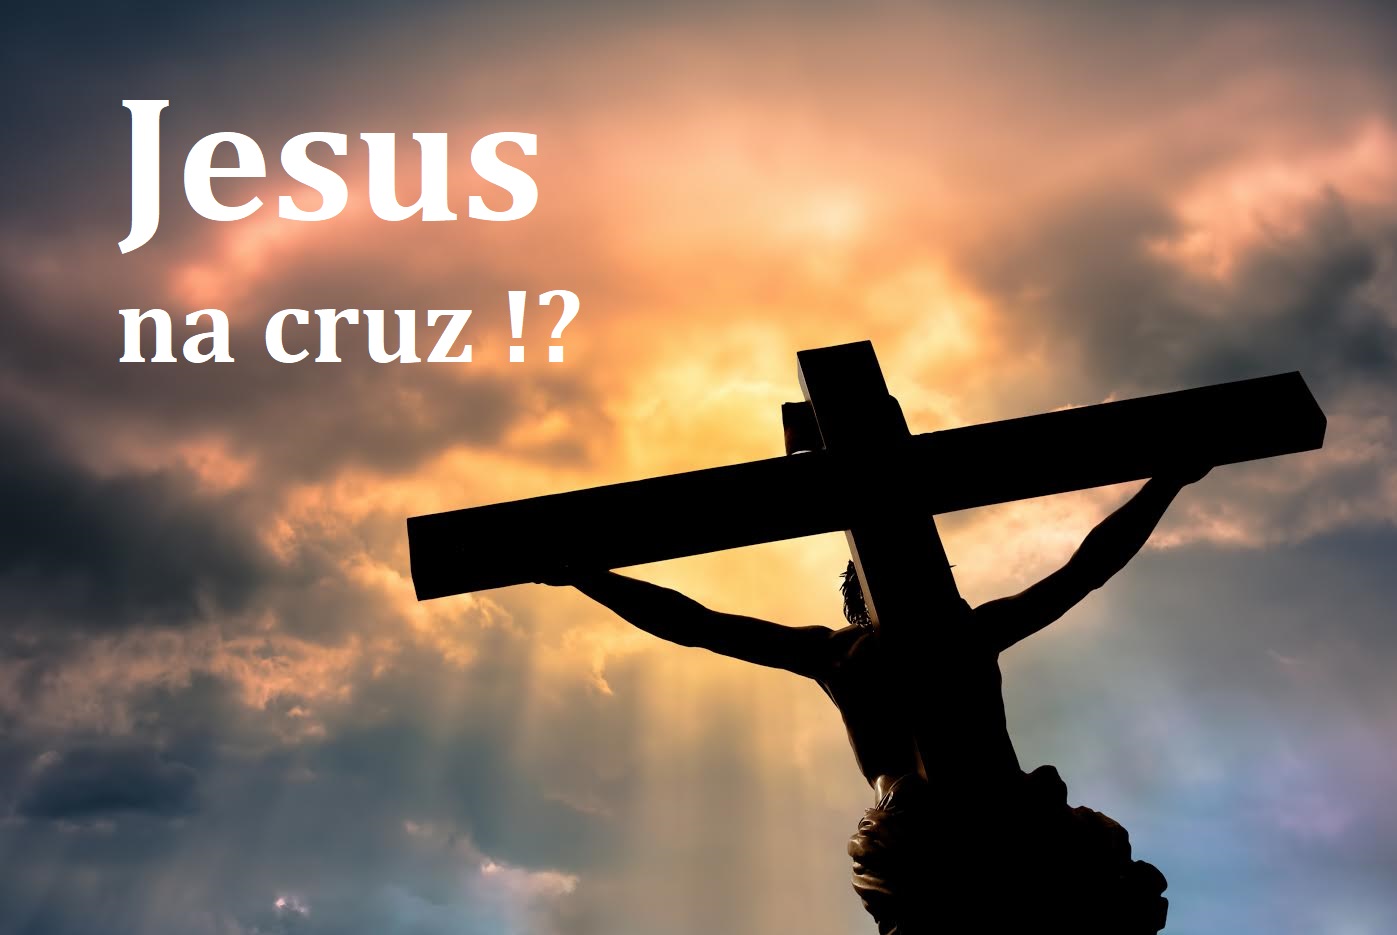 Jesus na cruz !? 